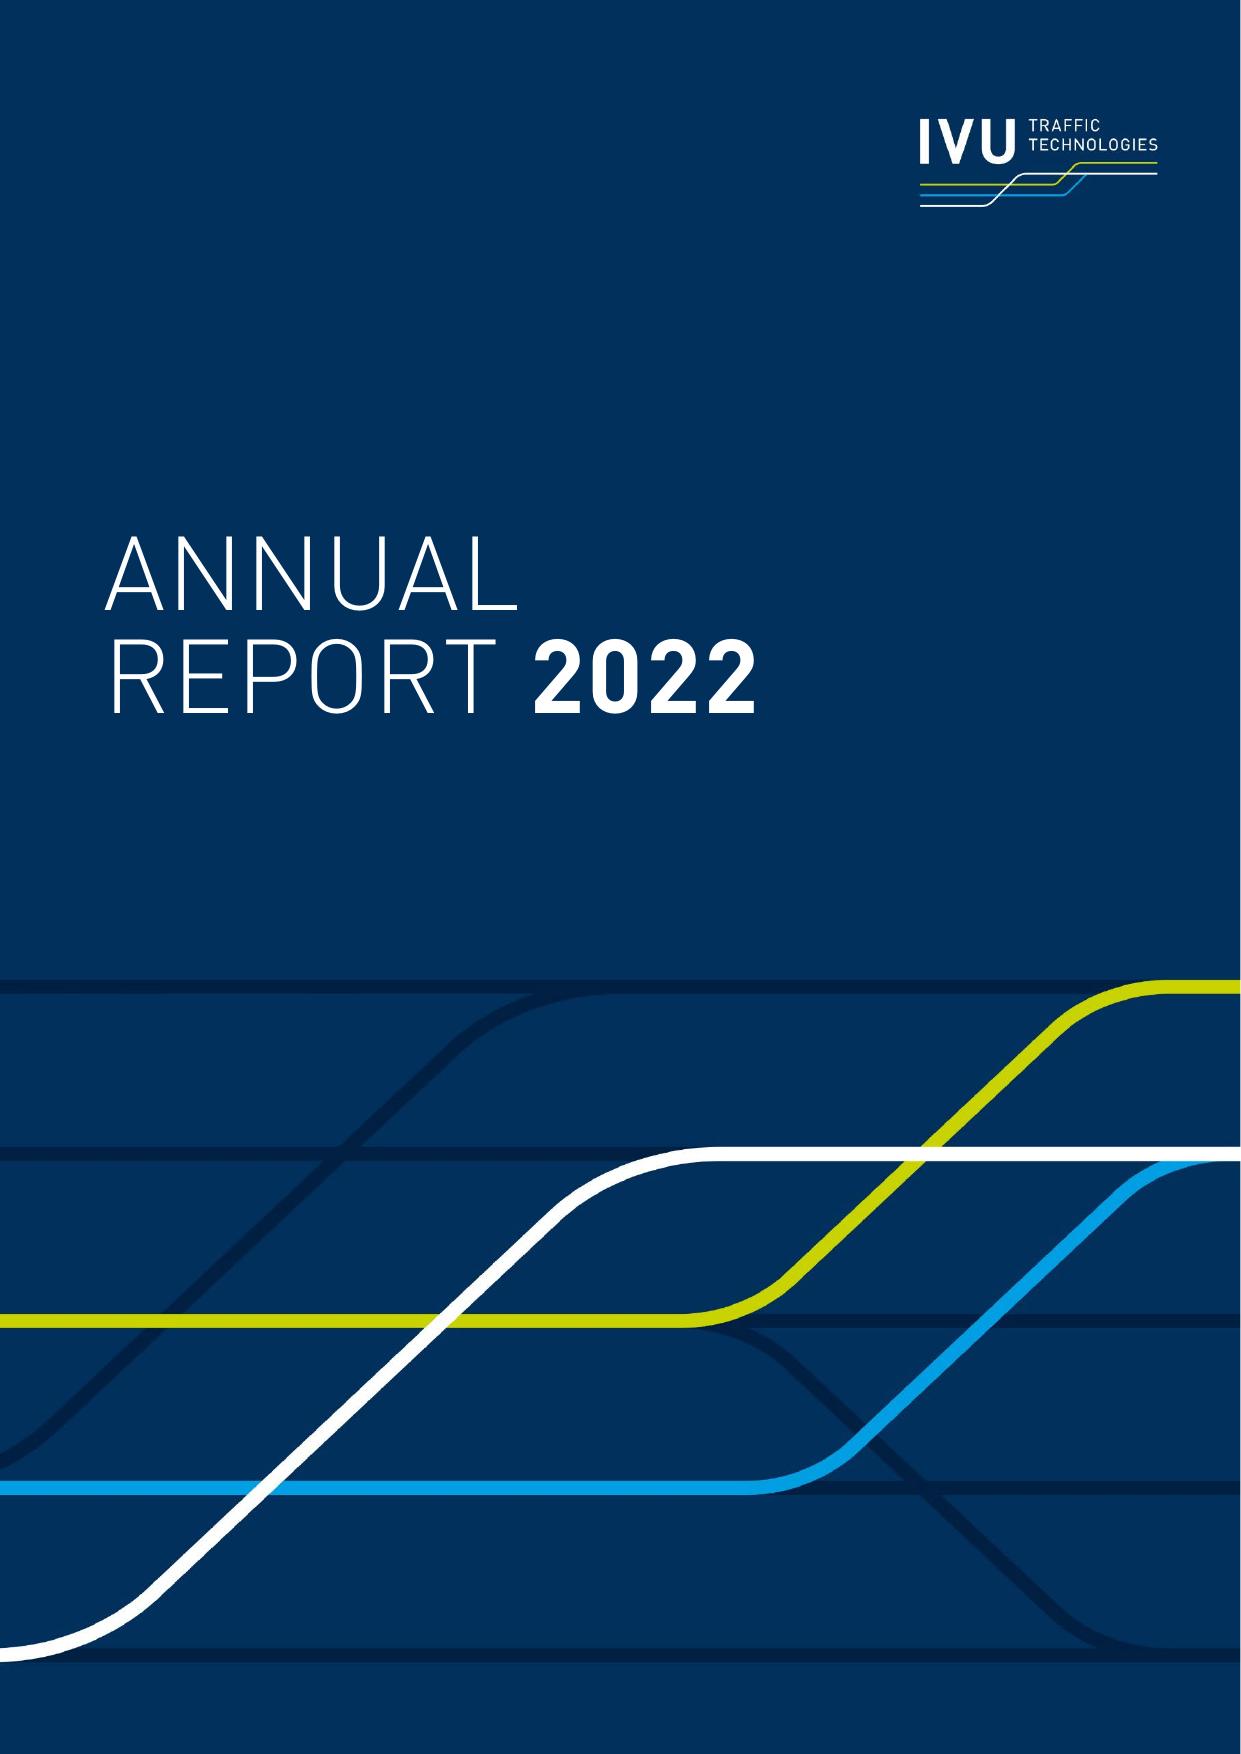 IVU 2022 Annual Report